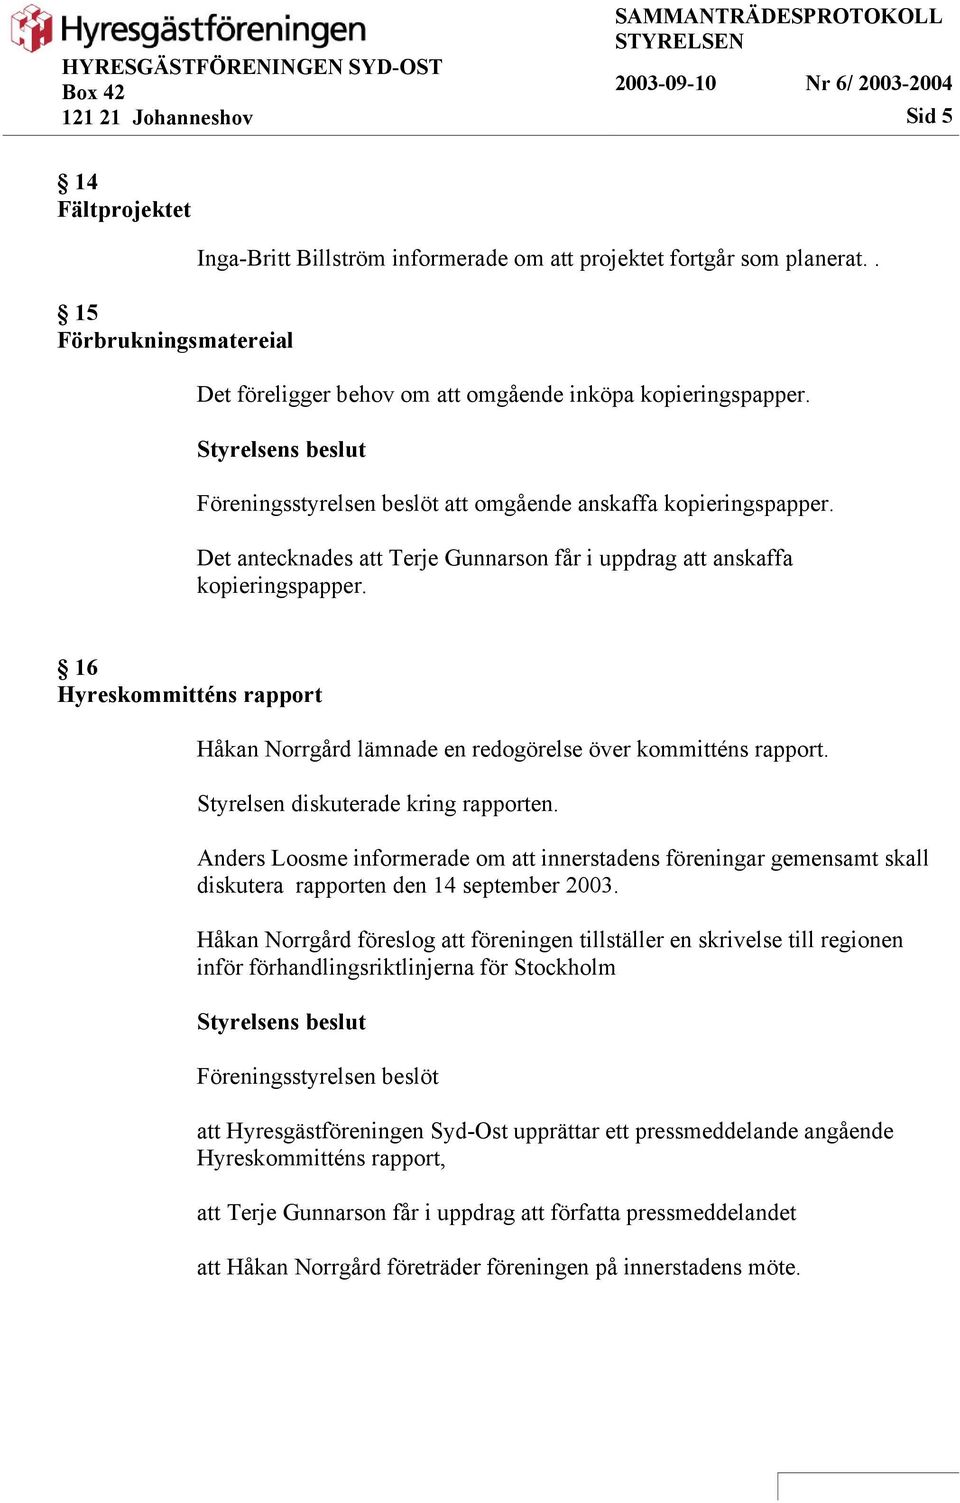 16 Hyreskommitténs rapport Håkan Norrgård lämnade en redogörelse över kommitténs rapport. Styrelsen diskuterade kring rapporten.